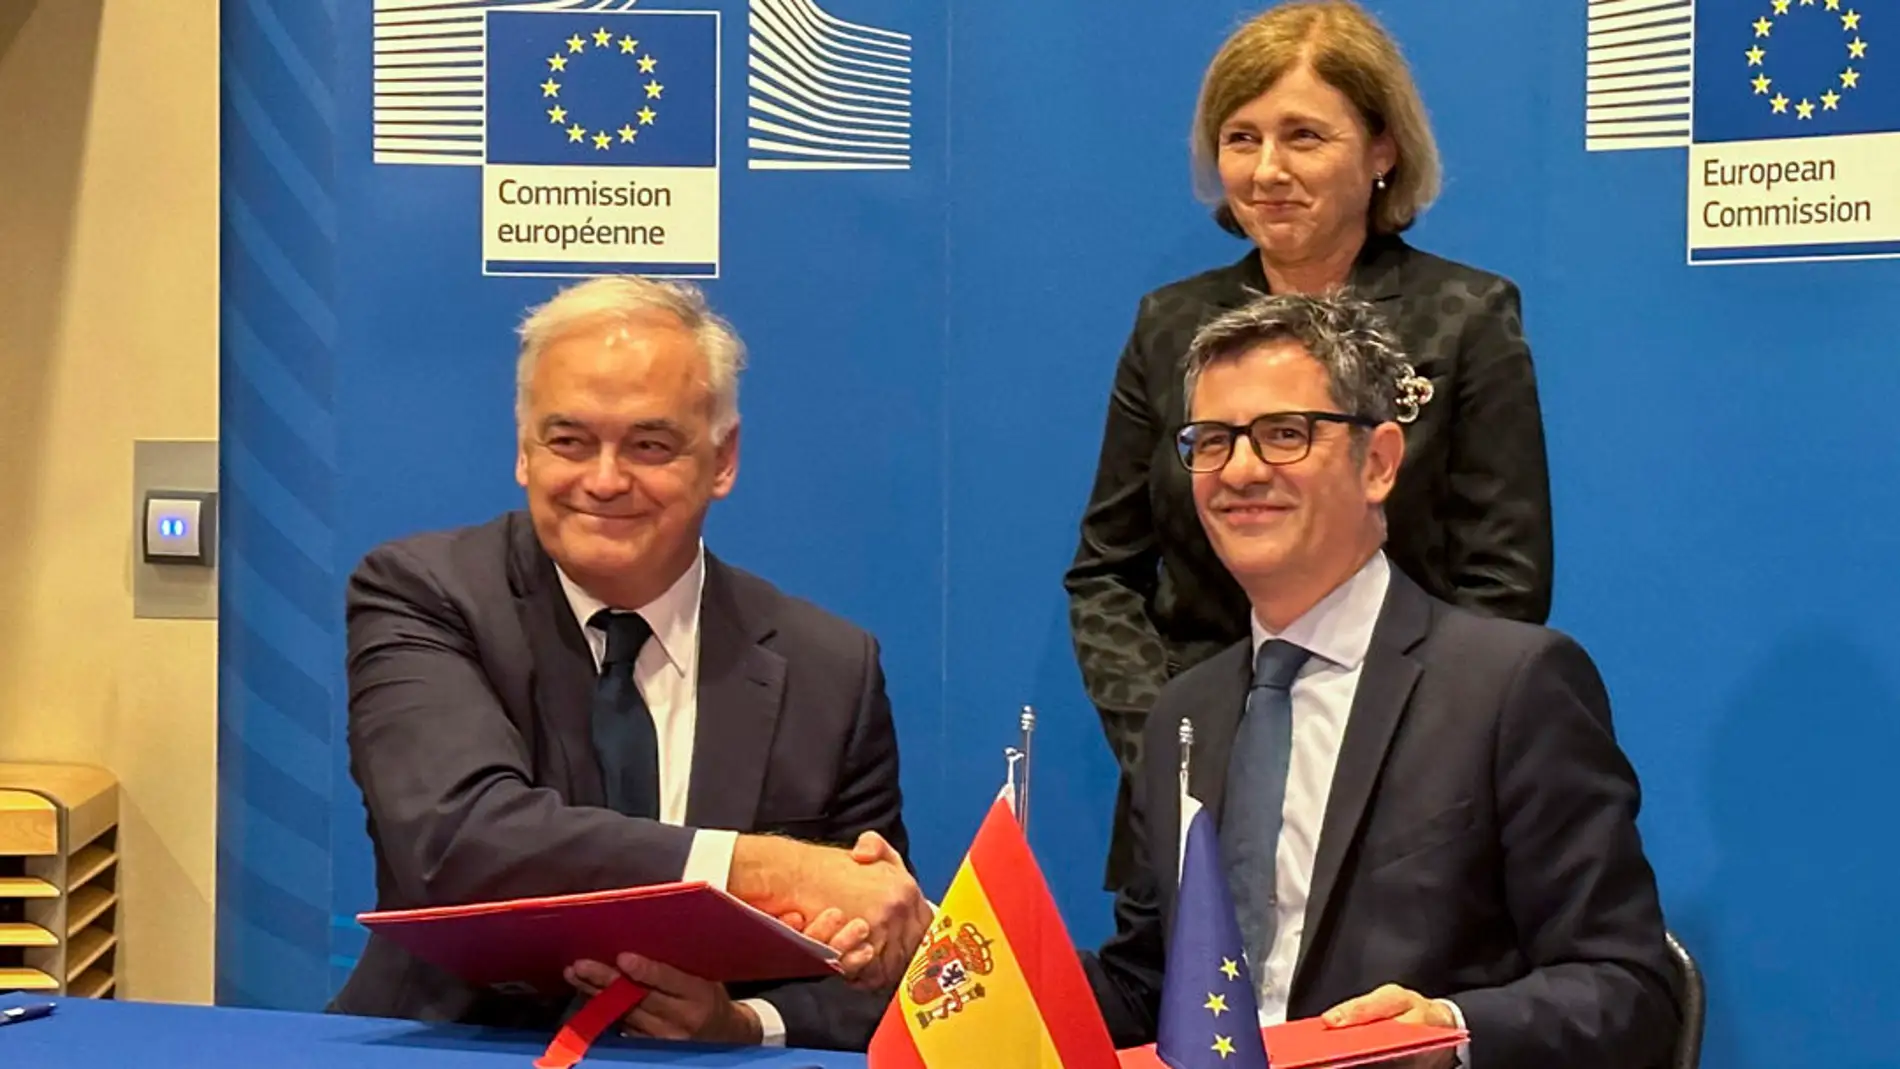  Félix Bolaños y Esteban González Pons firman el acuerdo para la renovación del Consejo General del Poder Judicial (CGPJ)